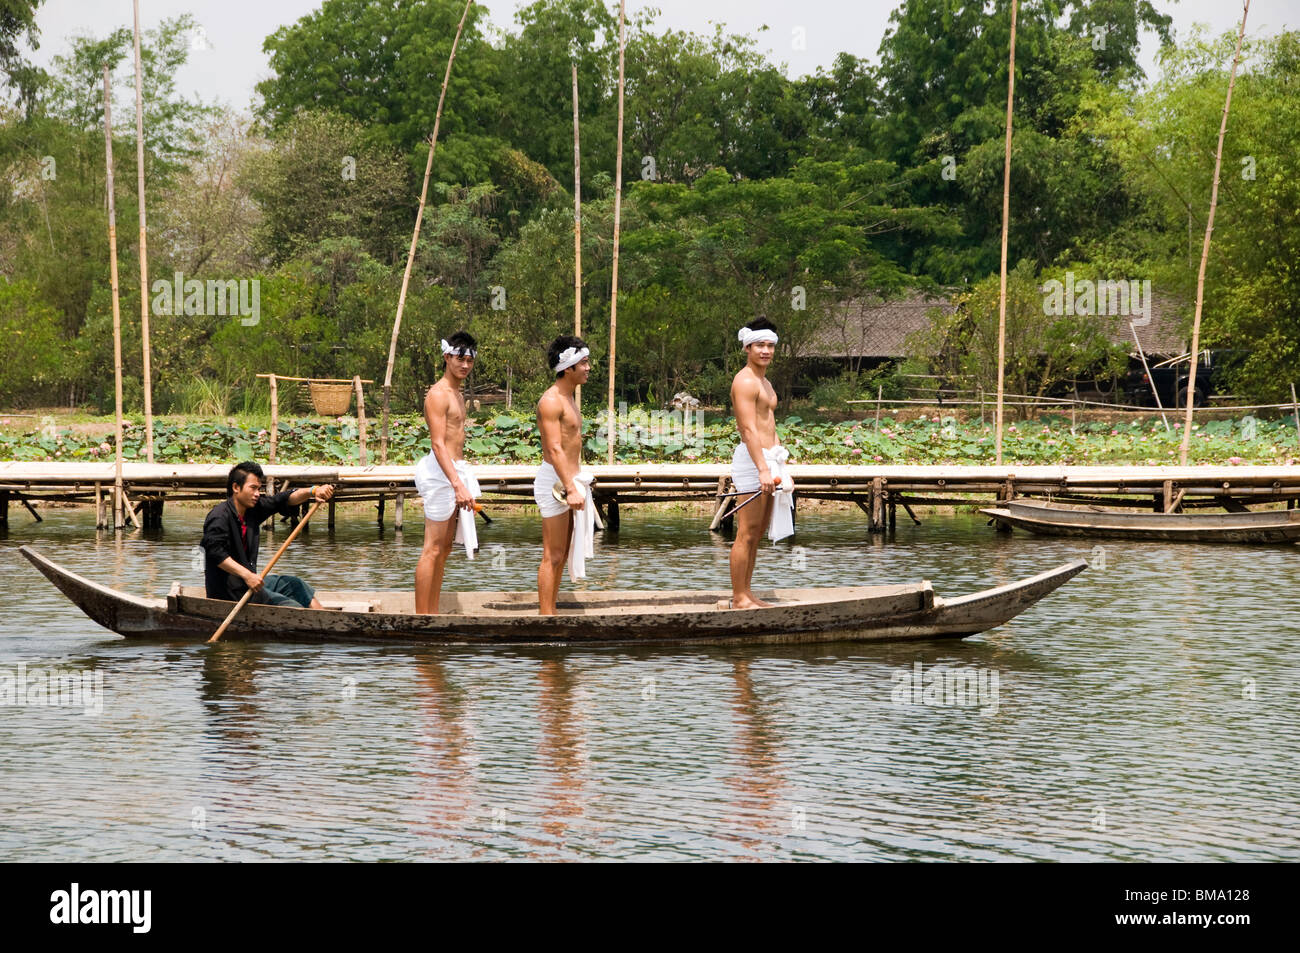 Los artistas intérpretes o ejecutantes en el barco va a realizar en el exterior del teatro de agua, Klong sra bua mercado flotante, Ayutthaya, Tailandia. Foto de stock